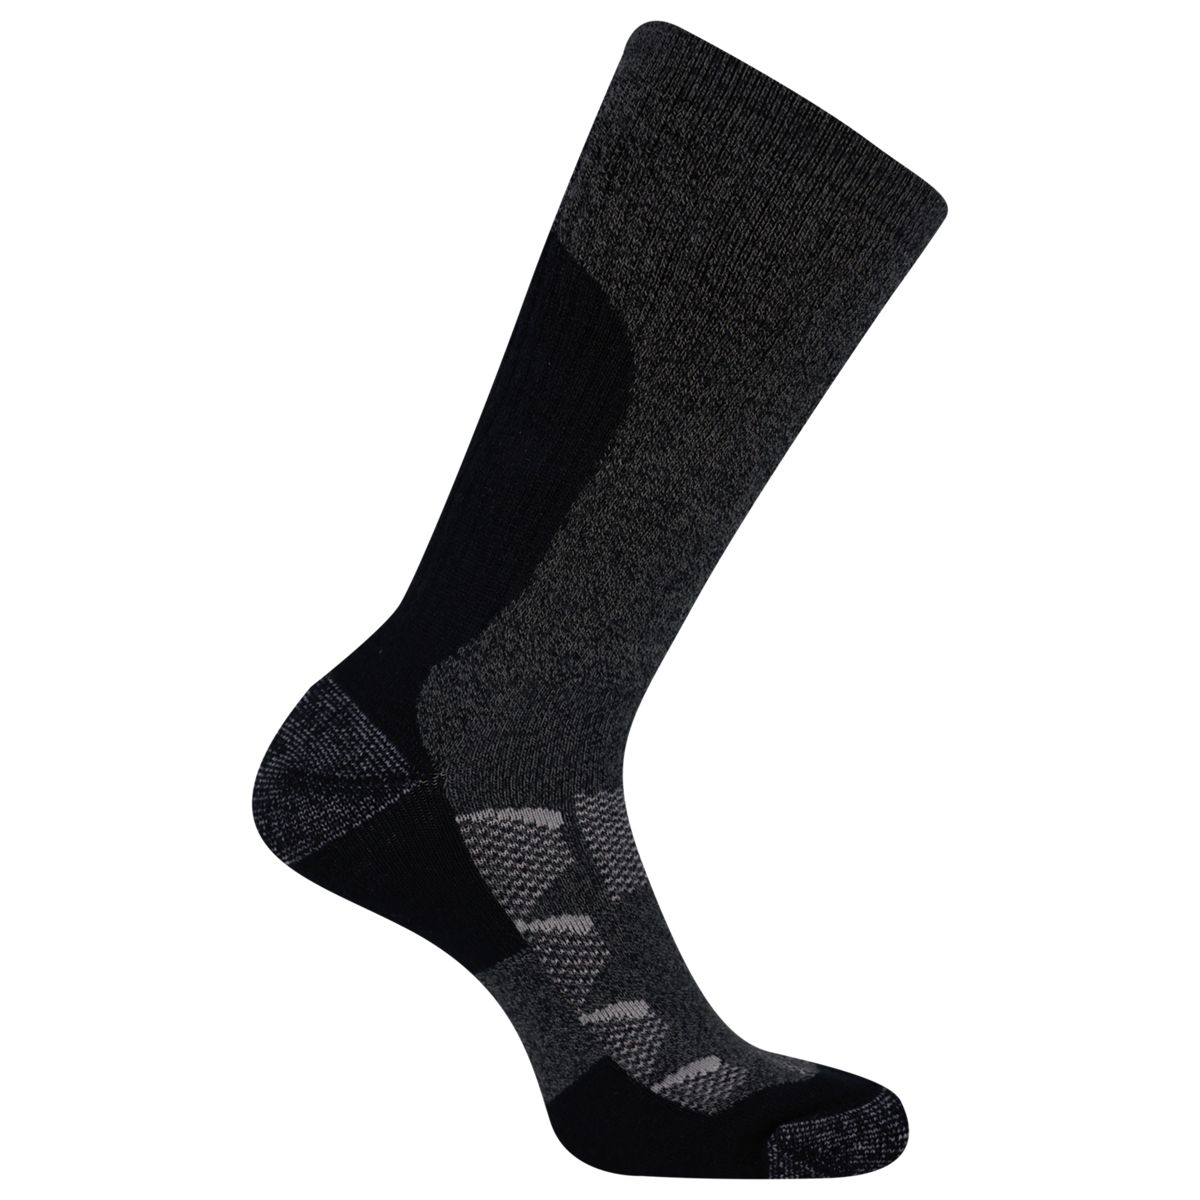 Merrell Quarter Women's Ankle Socks - 4 Pack - Free Shipping